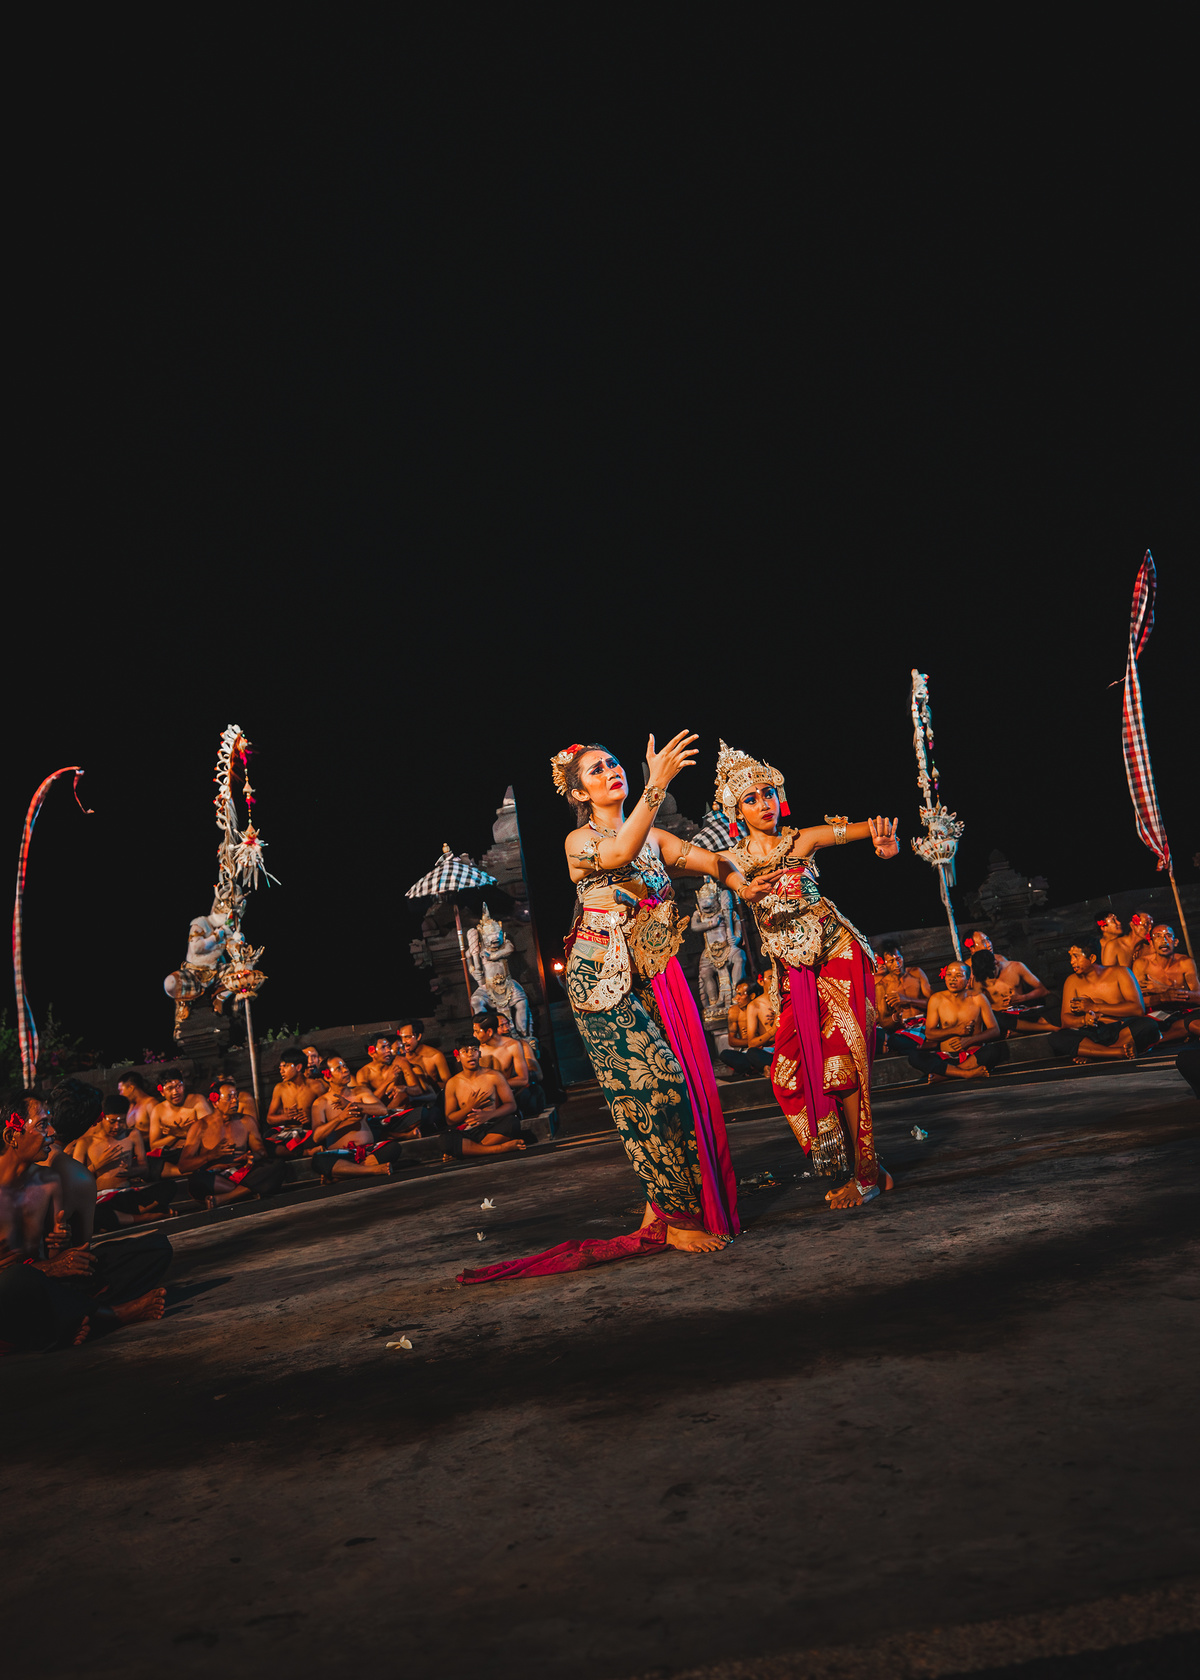 穿着传统服装的舞者在夜晚表演